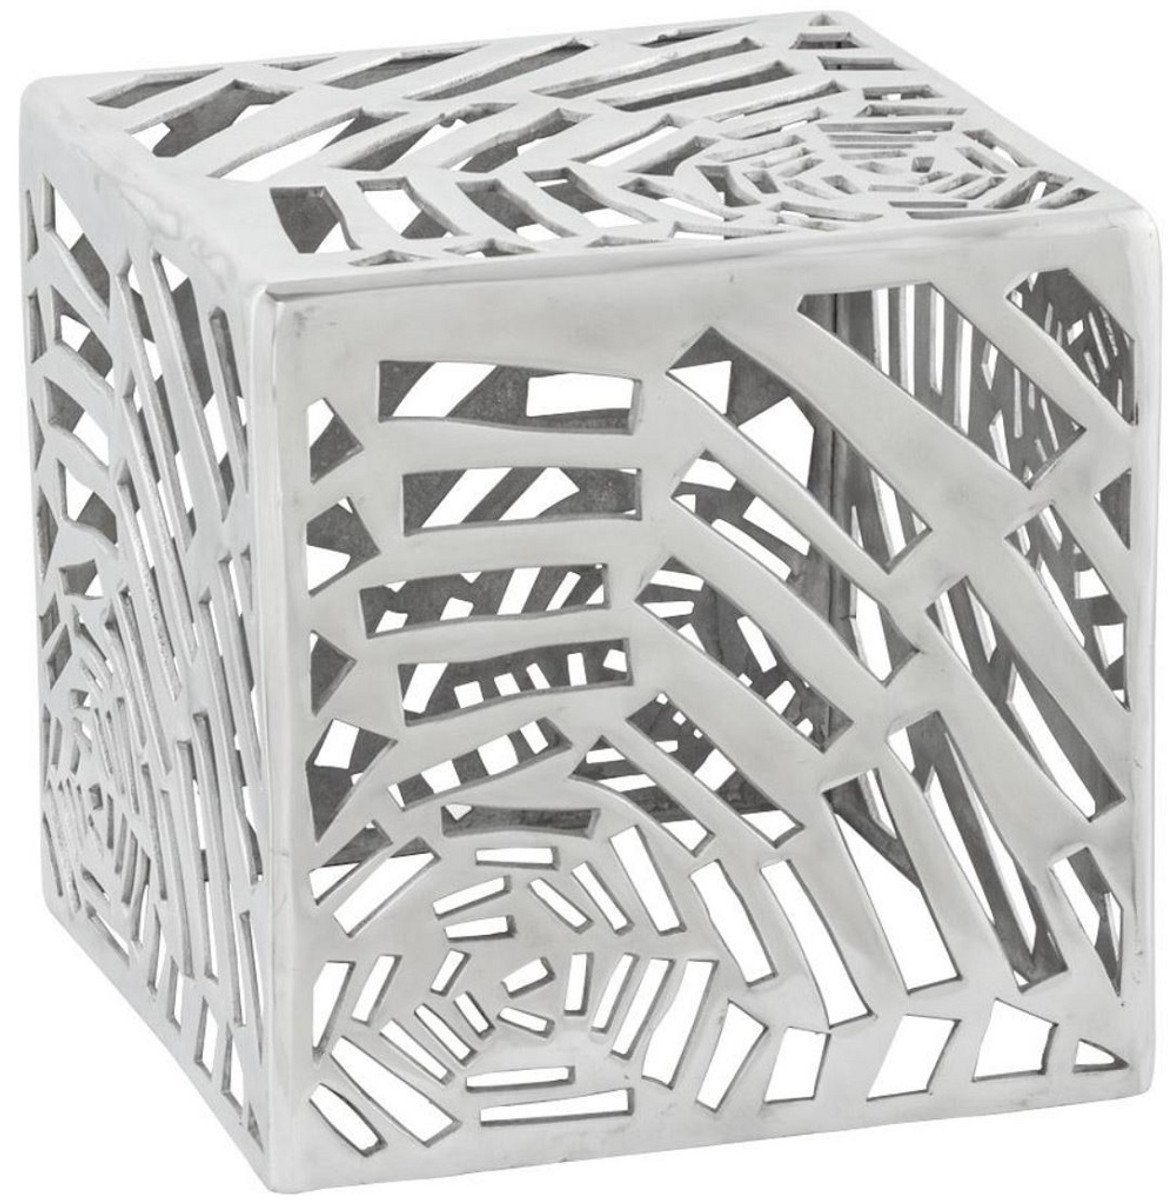 Casa Padrino Beistelltisch Beistelltisch Silber 37 x 37 x H. 37 cm - Moderner Aluminium Tisch in Würfelform - Wohnzimmermöbel